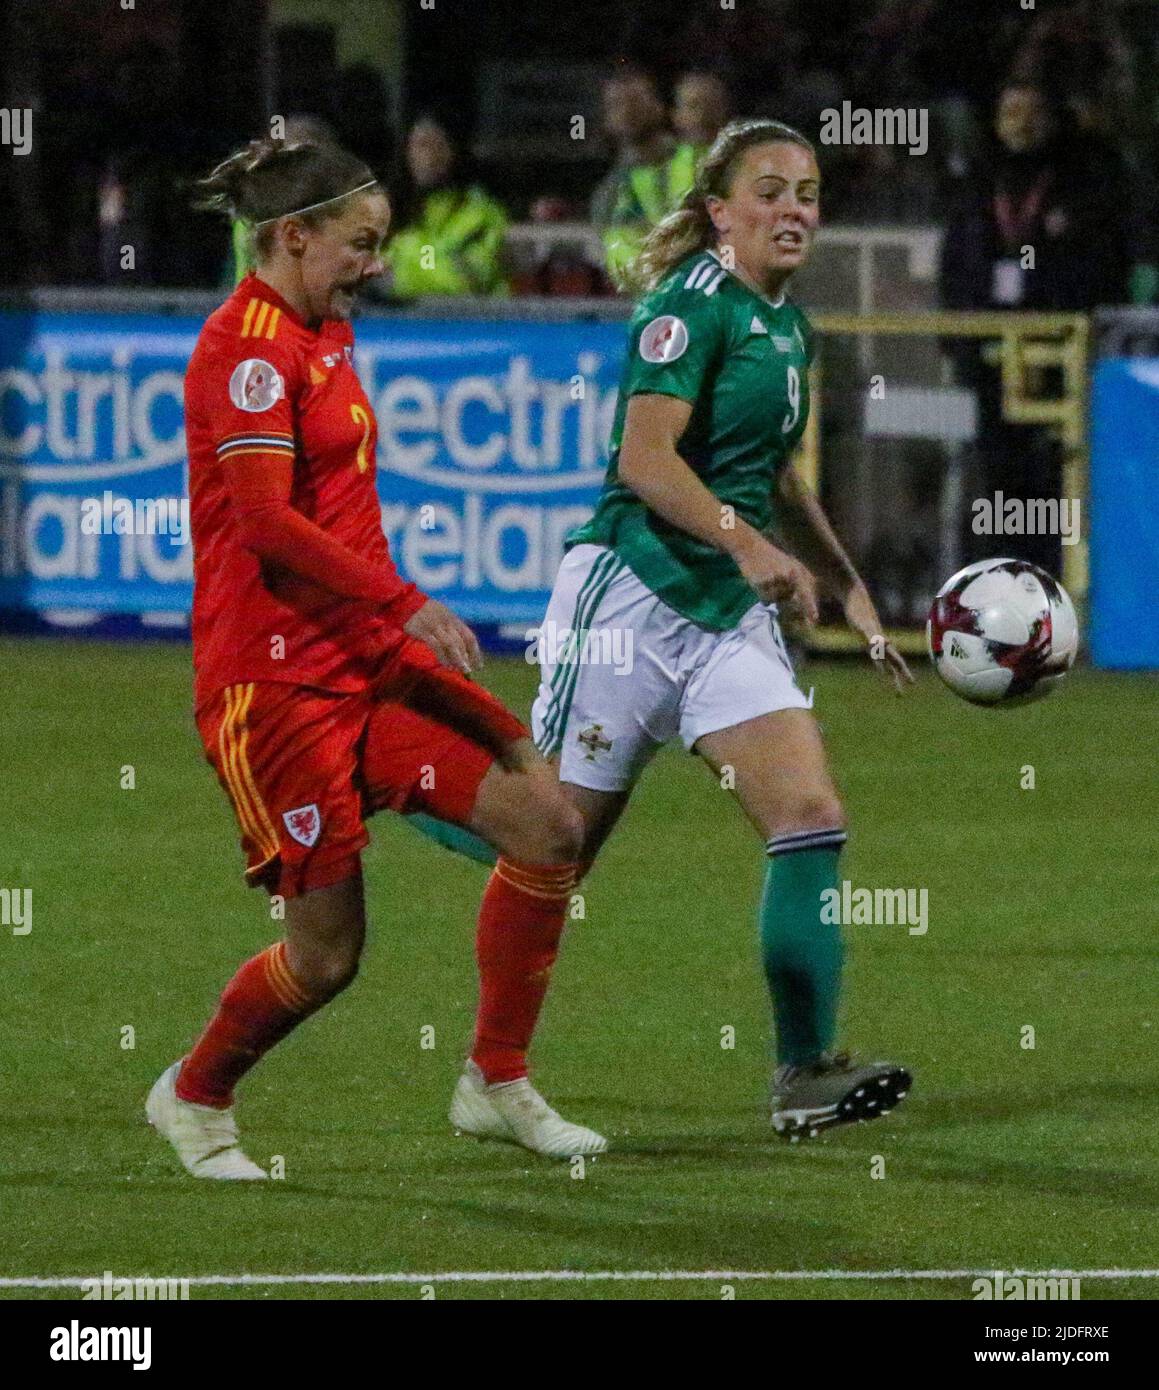 Campeonato Europeo Femenino de la UEFA 2021. 12 Nov 2019. Irlanda del Norte 0 Gales 0 en Seaview, Belfast. Irlanda del Norte Jugador de fútbol de la Internacional de Mujeres Simone Magill Irlanda del Norte (9). Foto de stock